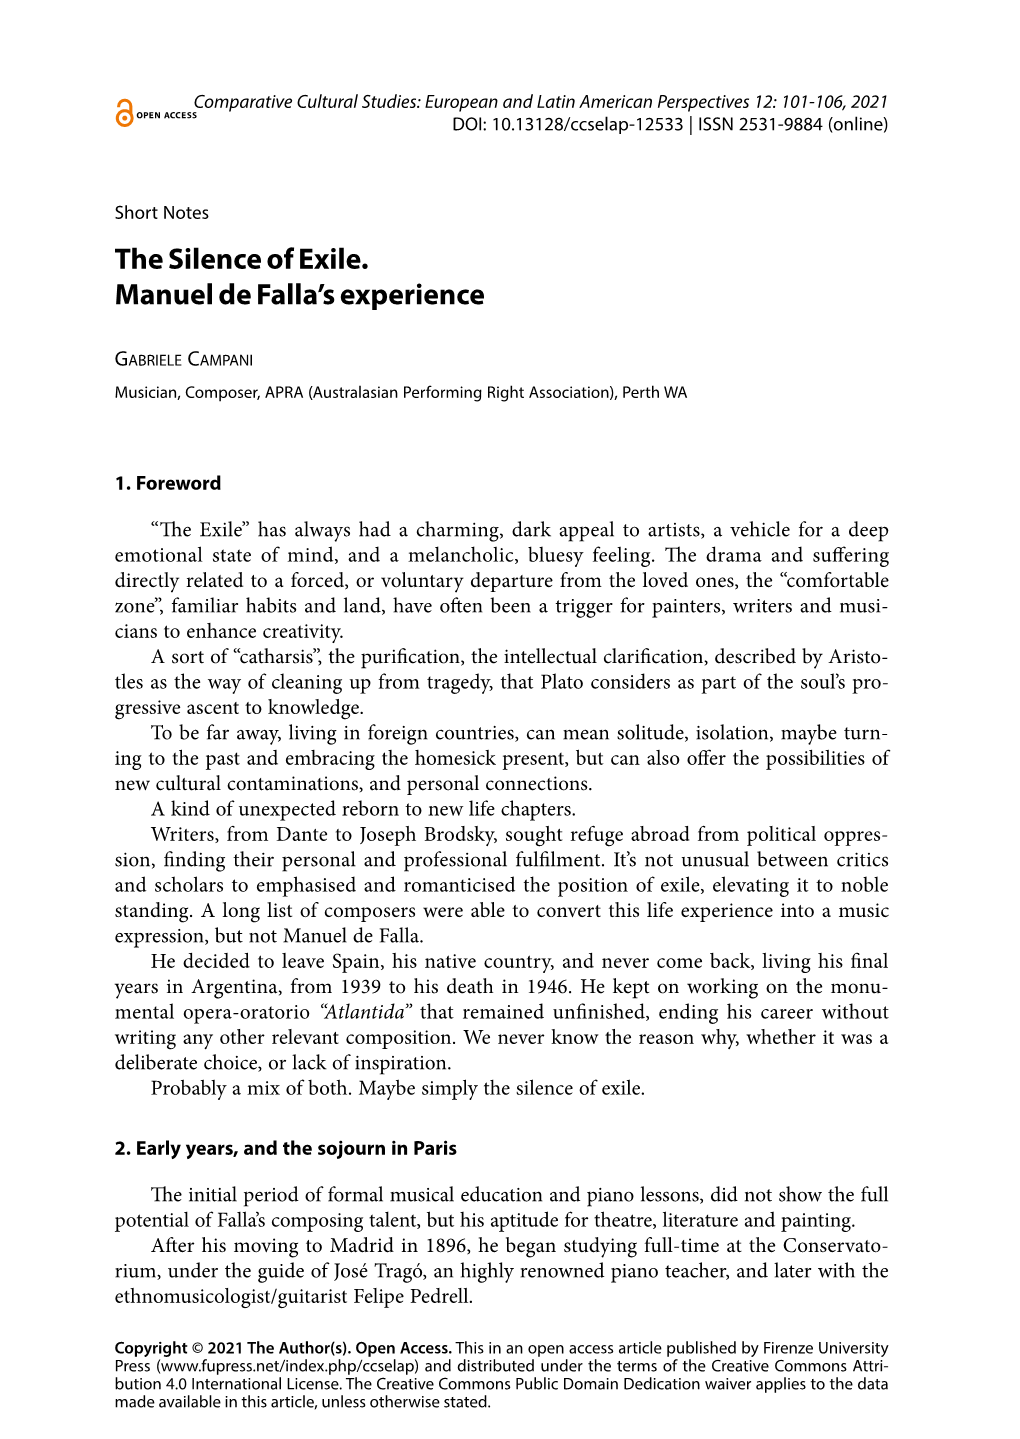 The Silence of Exile. Manuel De Falla's Experience